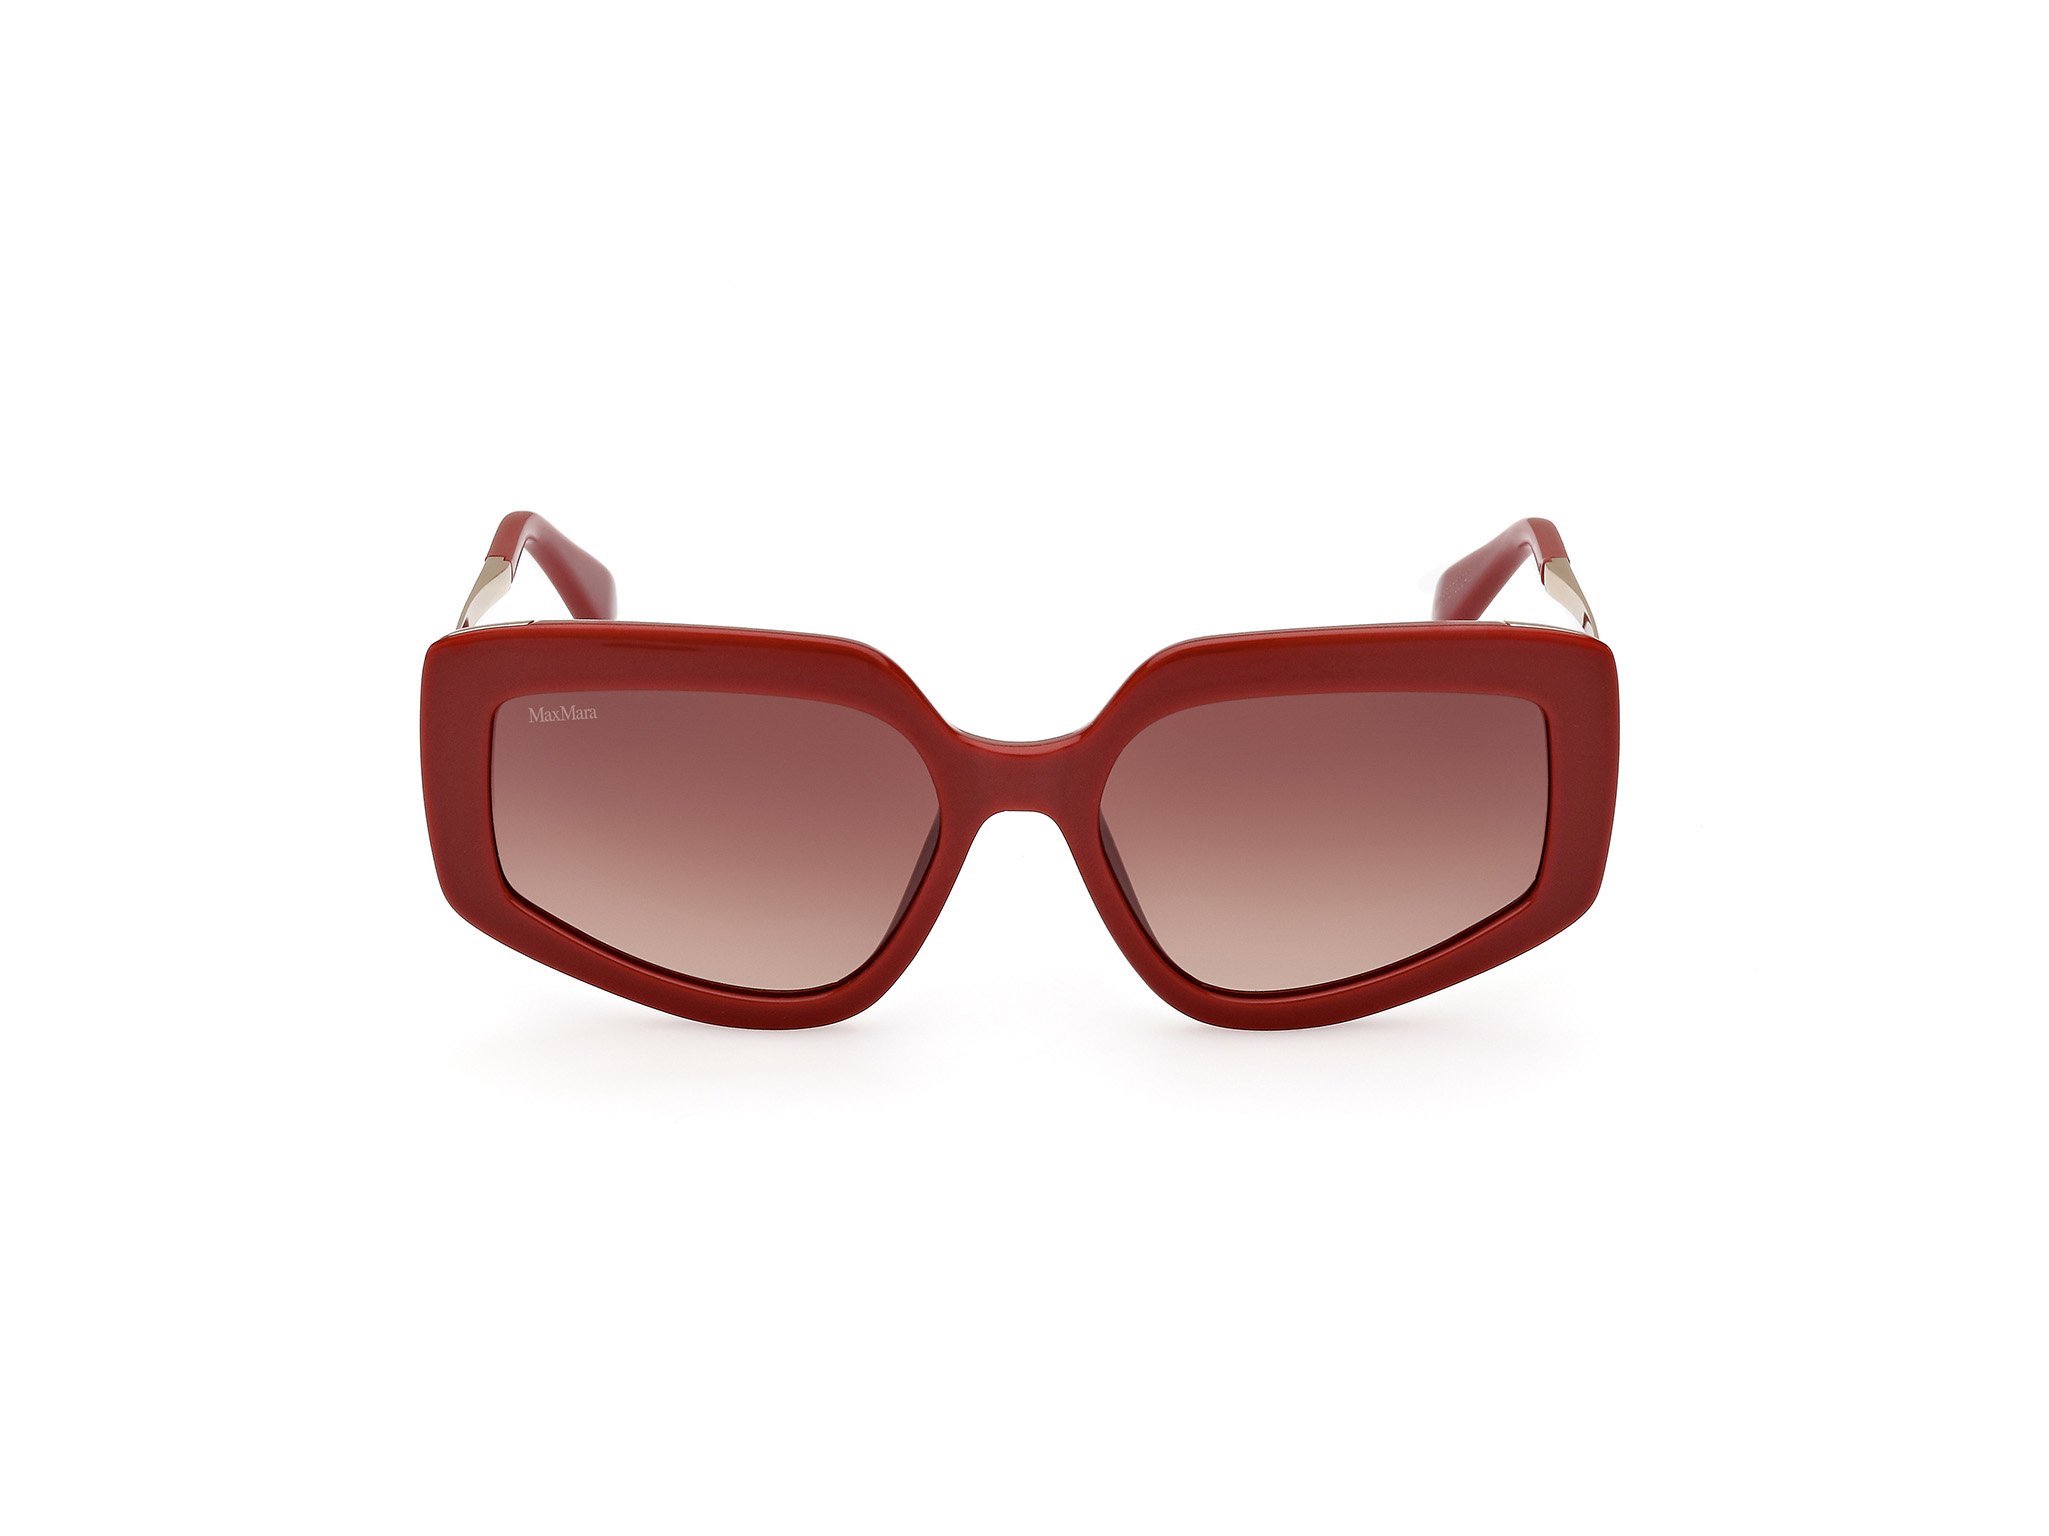 Das Bild zeigt die Sonnenbrille MM0069 66F von der Marke Max Mara in Rot.